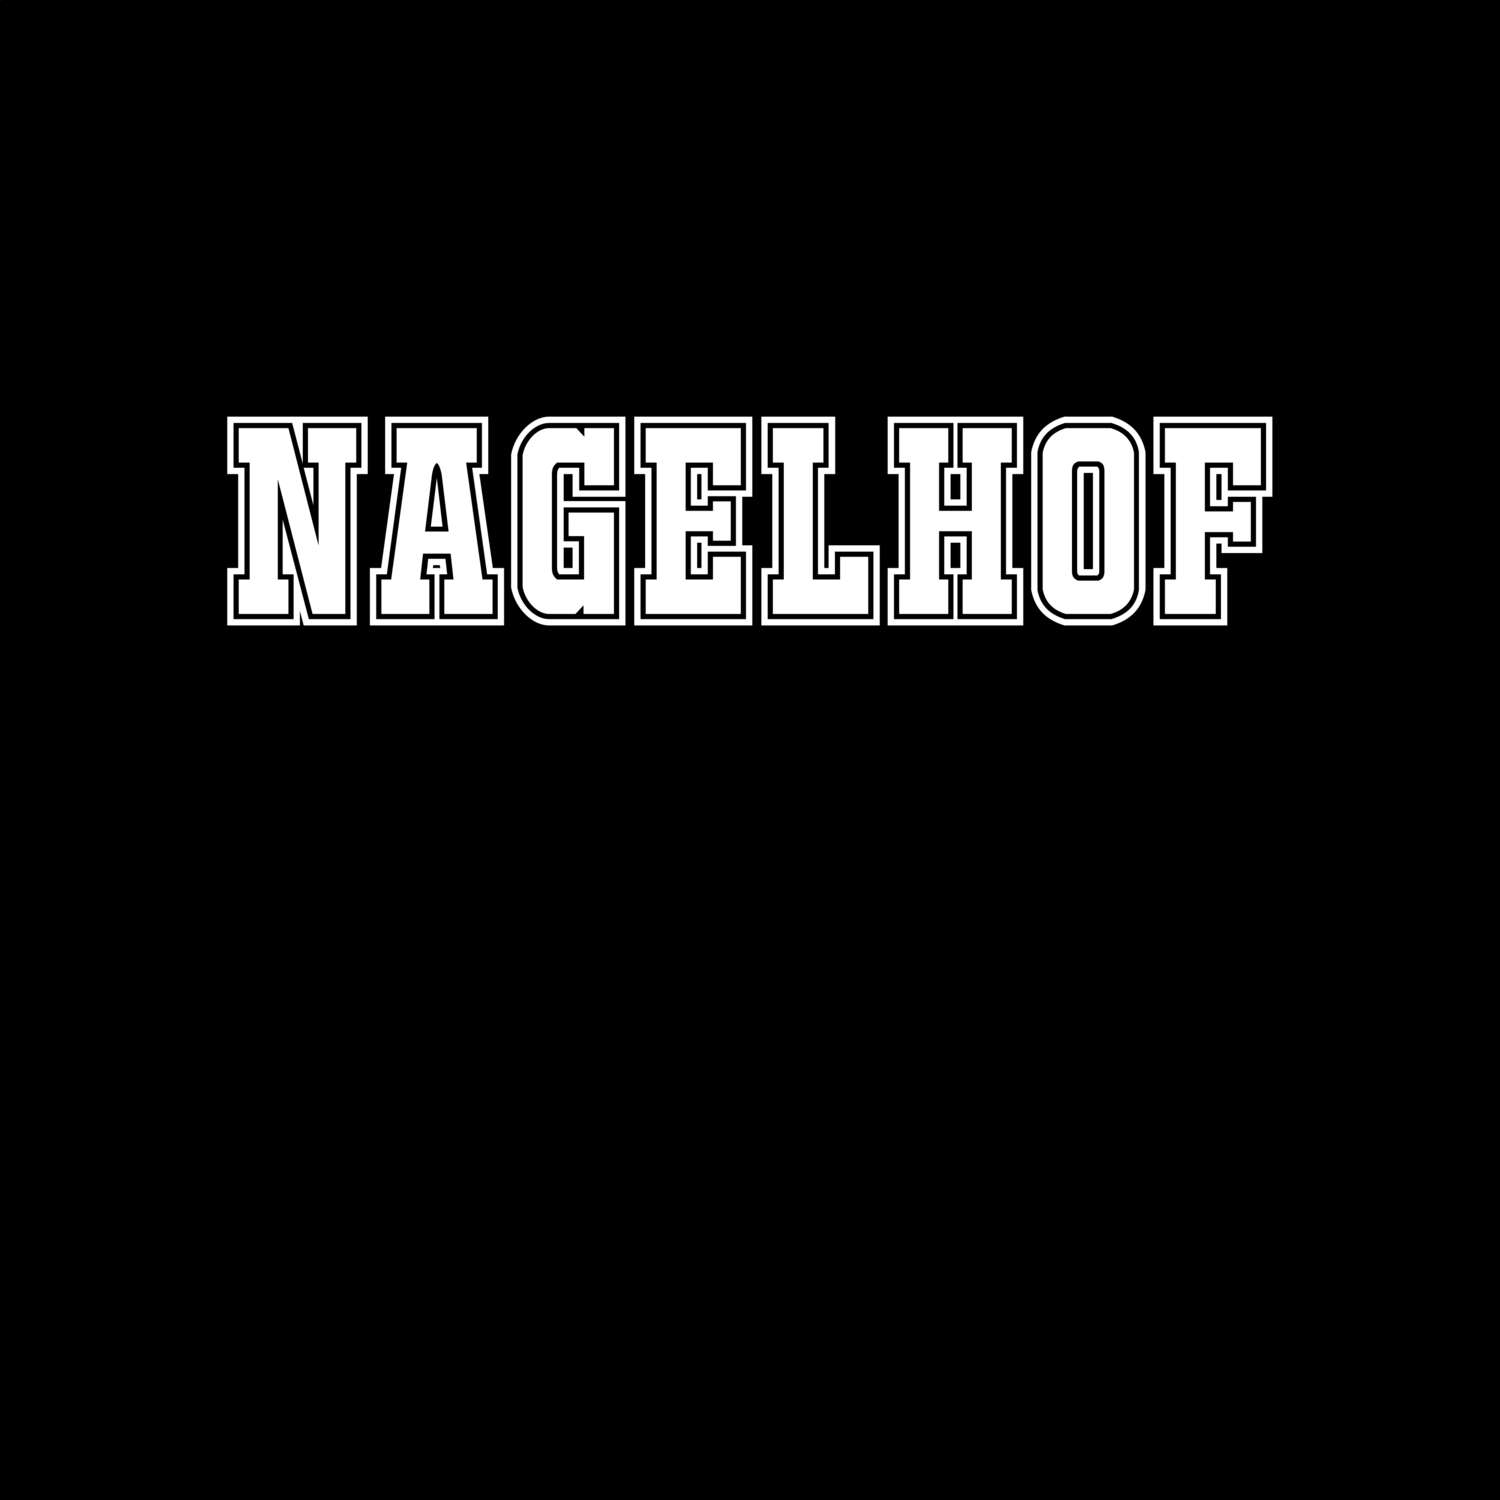 Nagelhof T-Shirt »Classic«